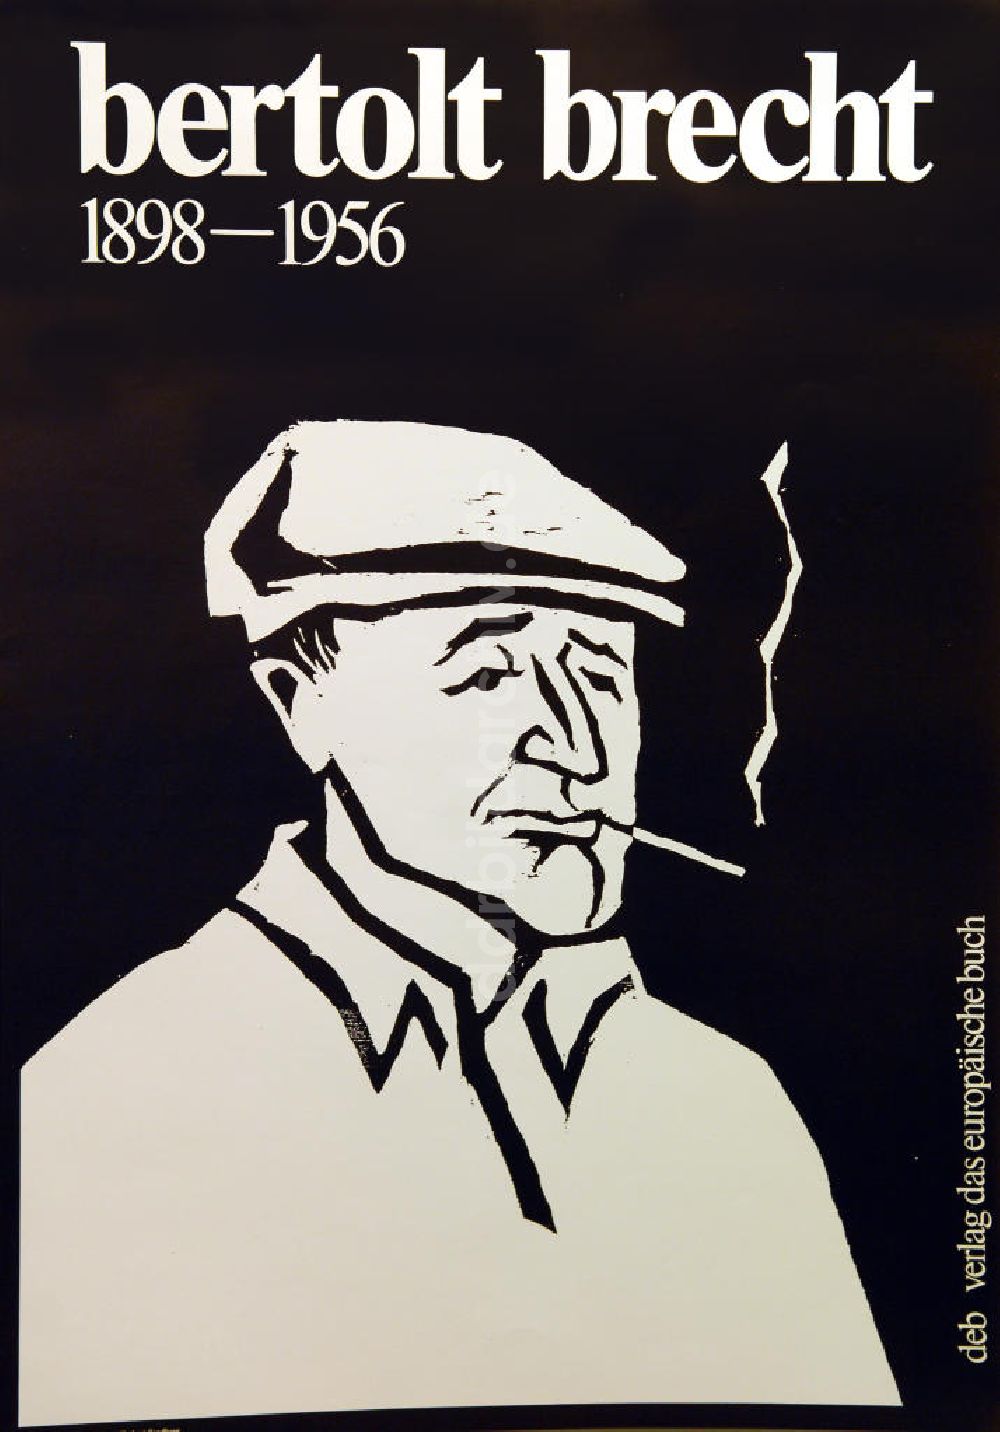 Berlin: Plakat von Herbert Sandberg bertolt brecht 1898-1965